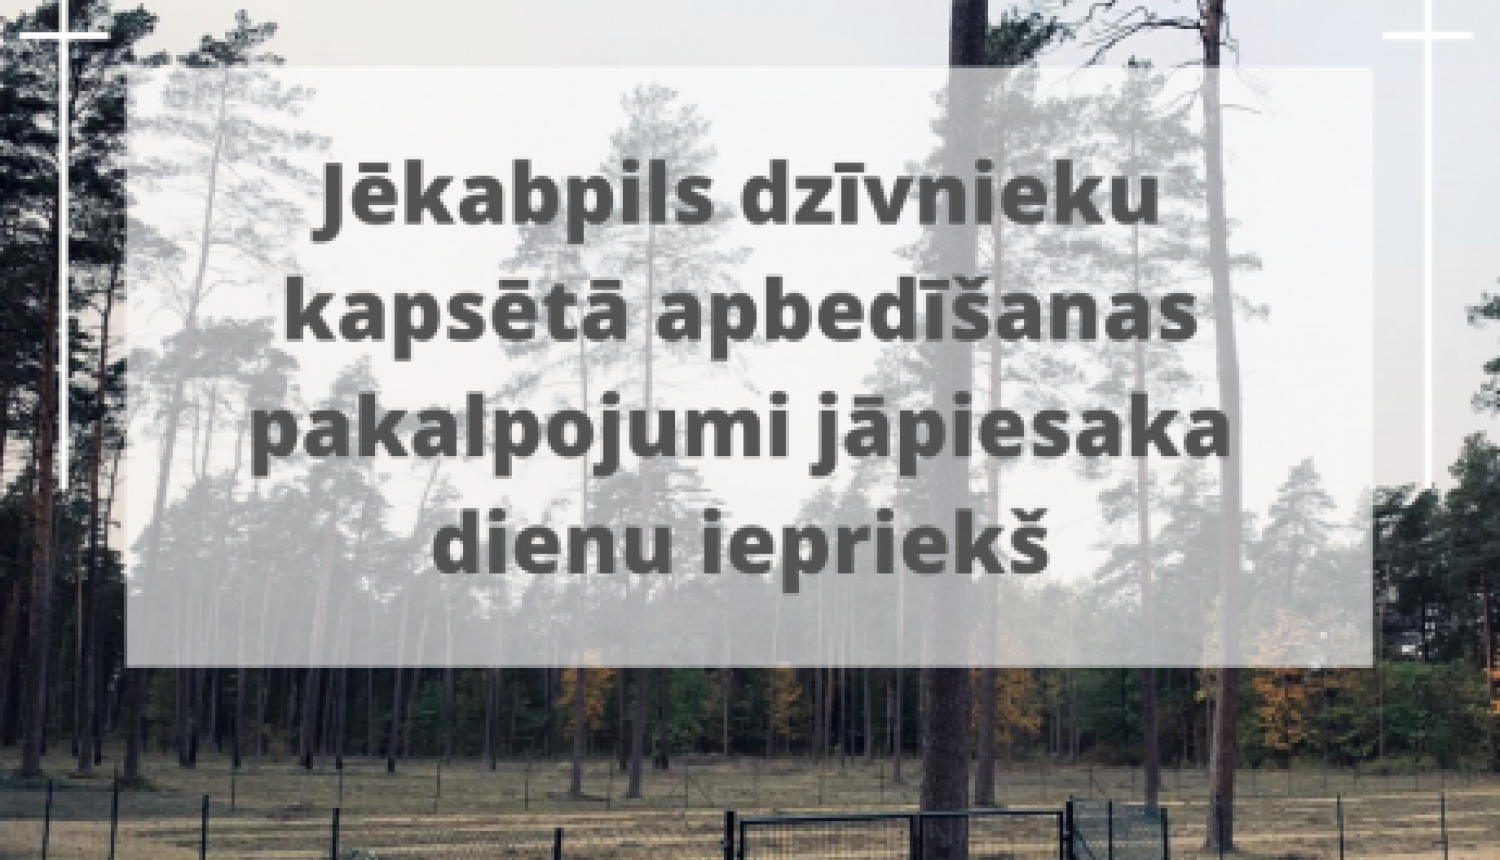 Mājdzīvnieku apbedīšana Jēkabpils dzīvnieku kapsētā jāpiesaka vismaz vienu dienu iepriekš